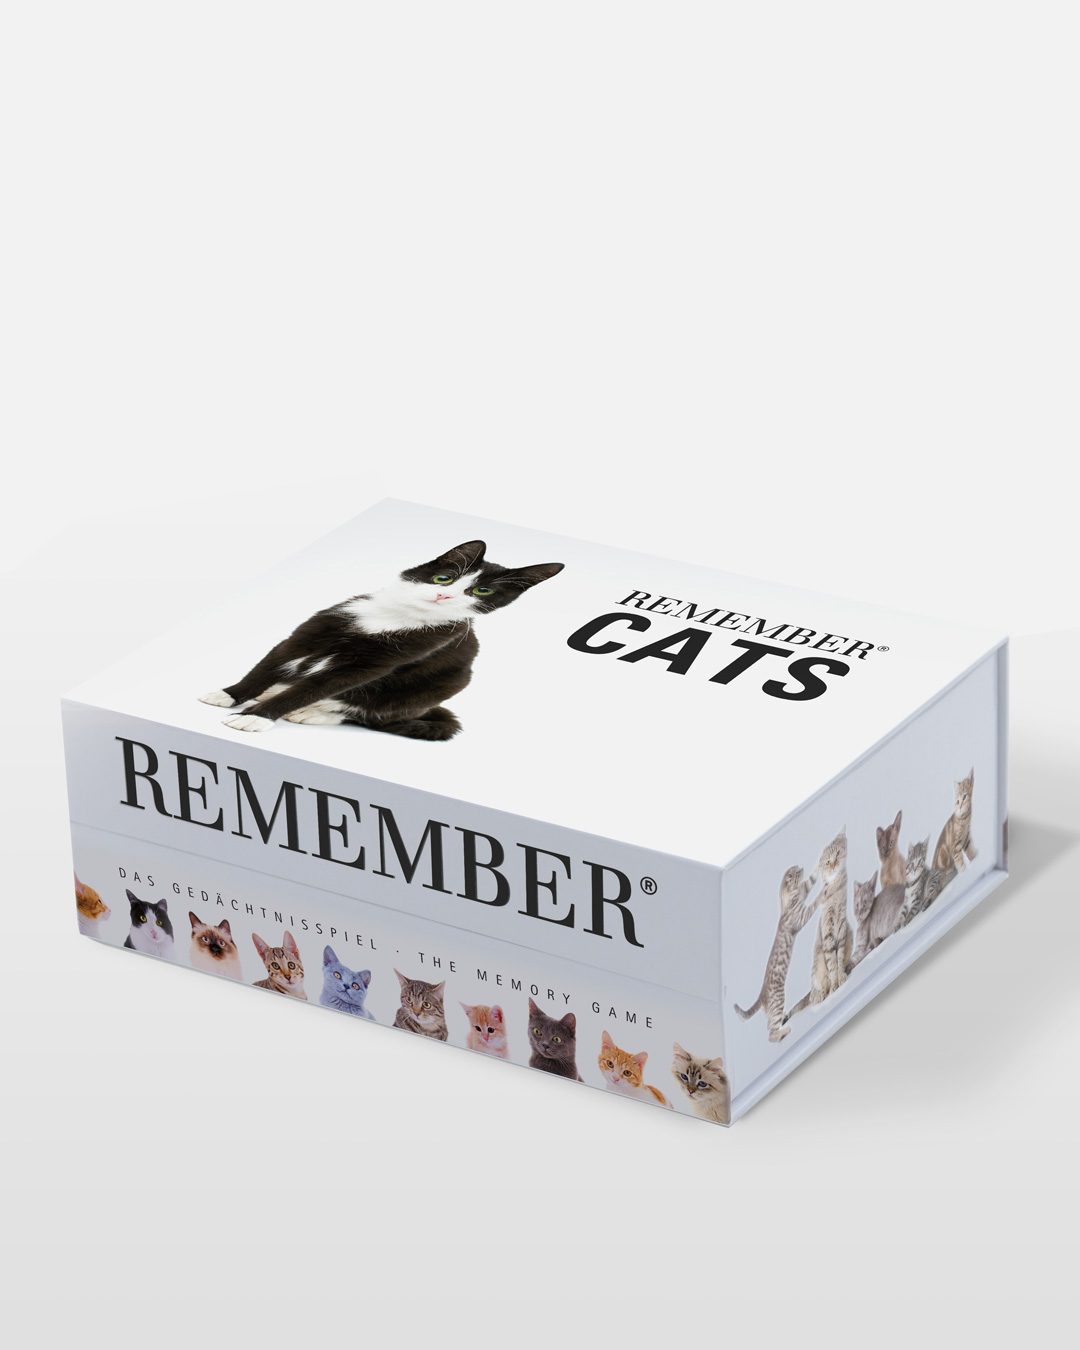 Juego de memoria, memory con fotografías de gatos